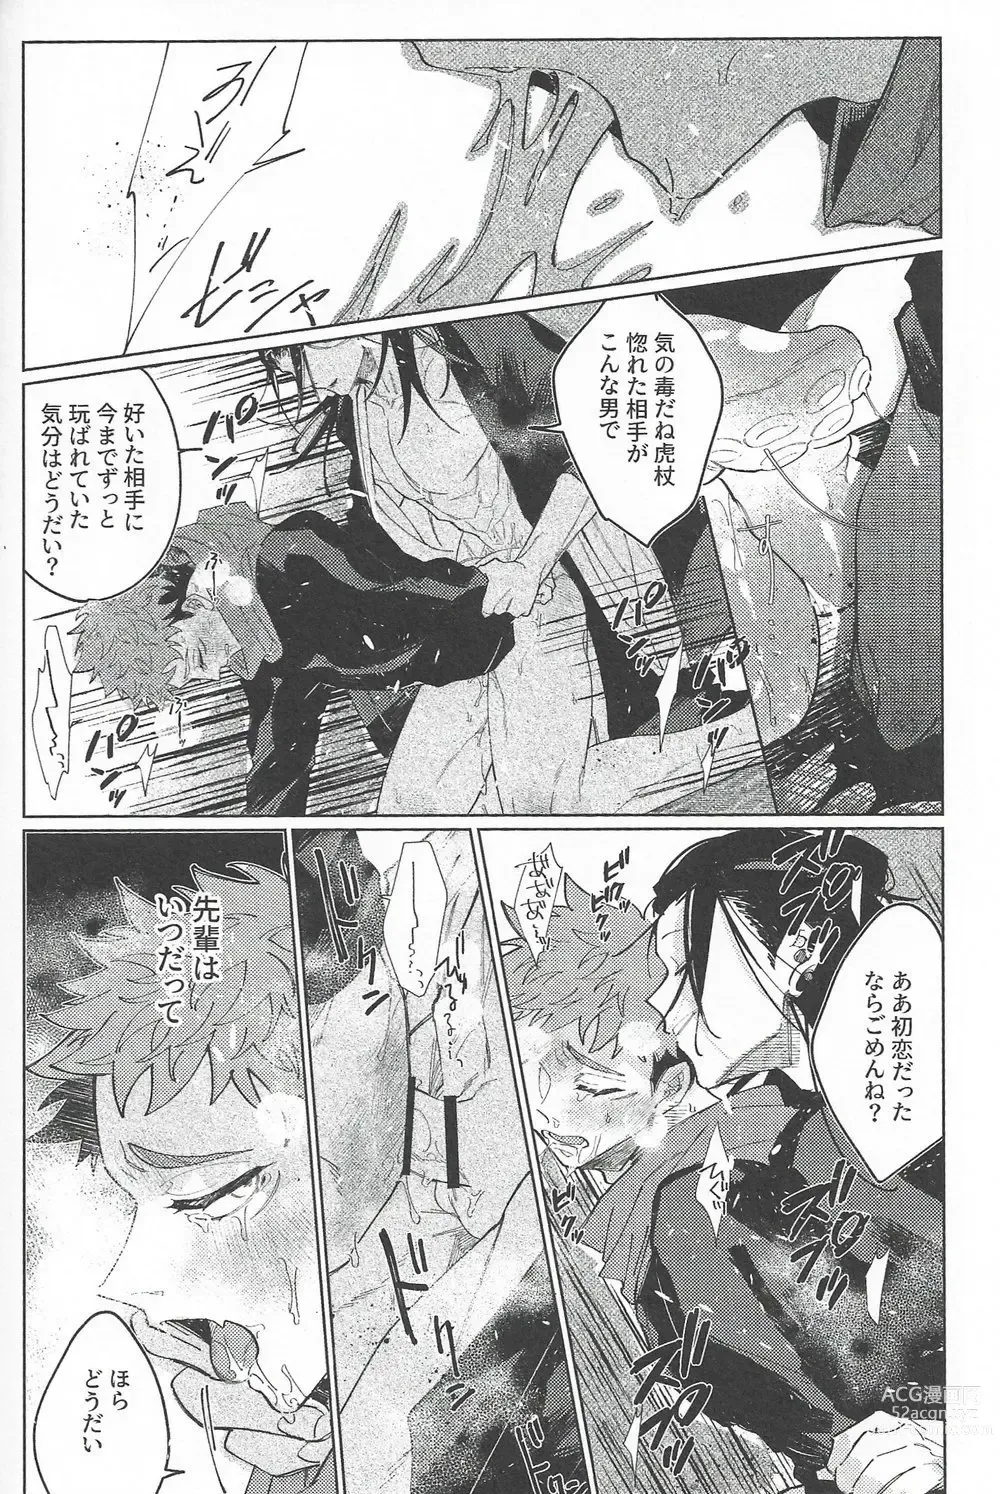 Page 65 of doujinshi Rakuen no Niwa